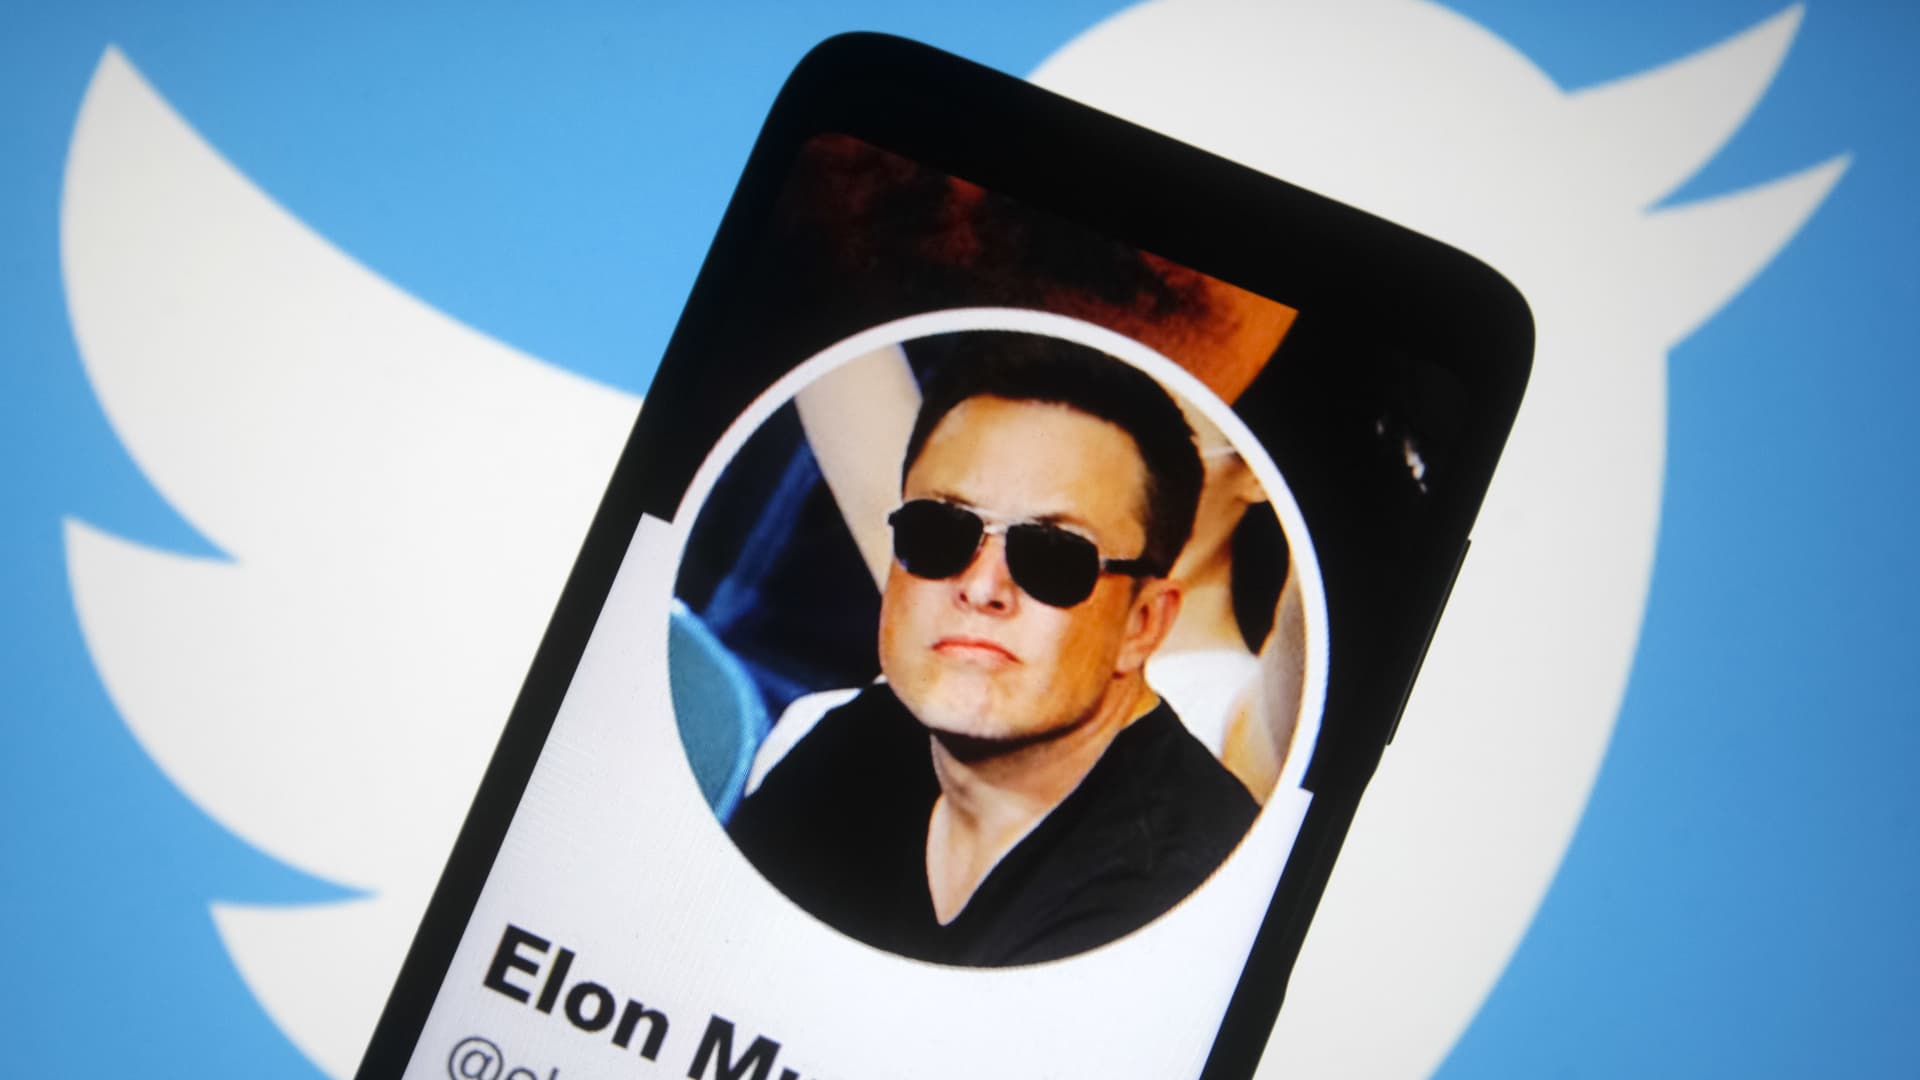 Twitter shares sink after Elon Musk terminates $44 billion deal